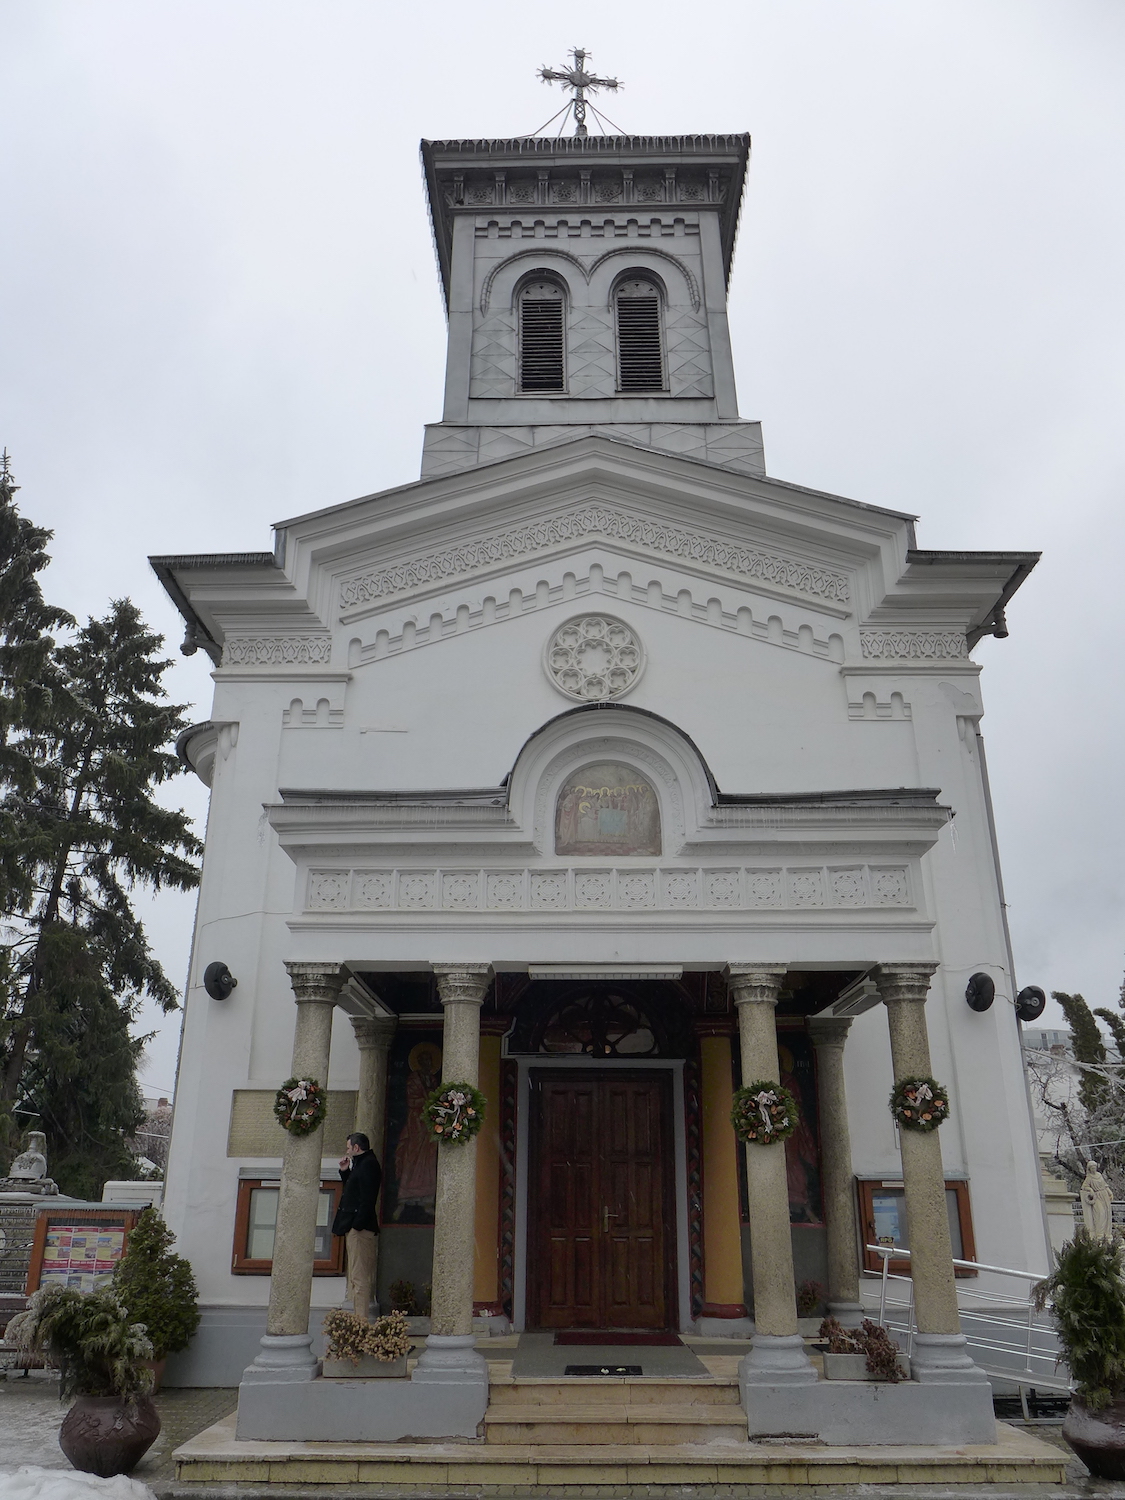 L’église Icoanei, dans le quartier du même nom. Elle date du XVIIIe siècle.